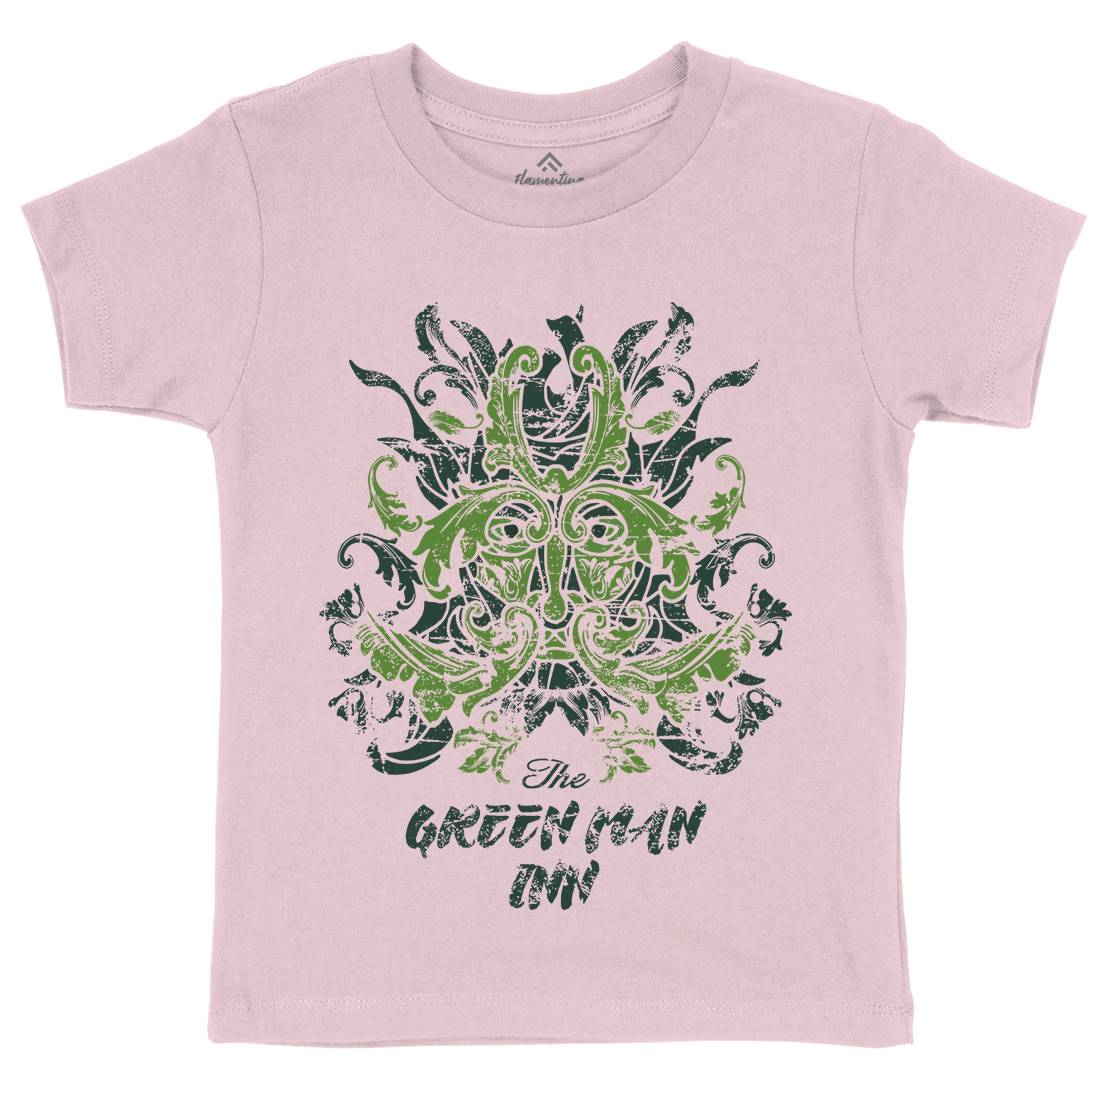 Green Man Inn Kids Crew Neck T-Shirt Horror D231